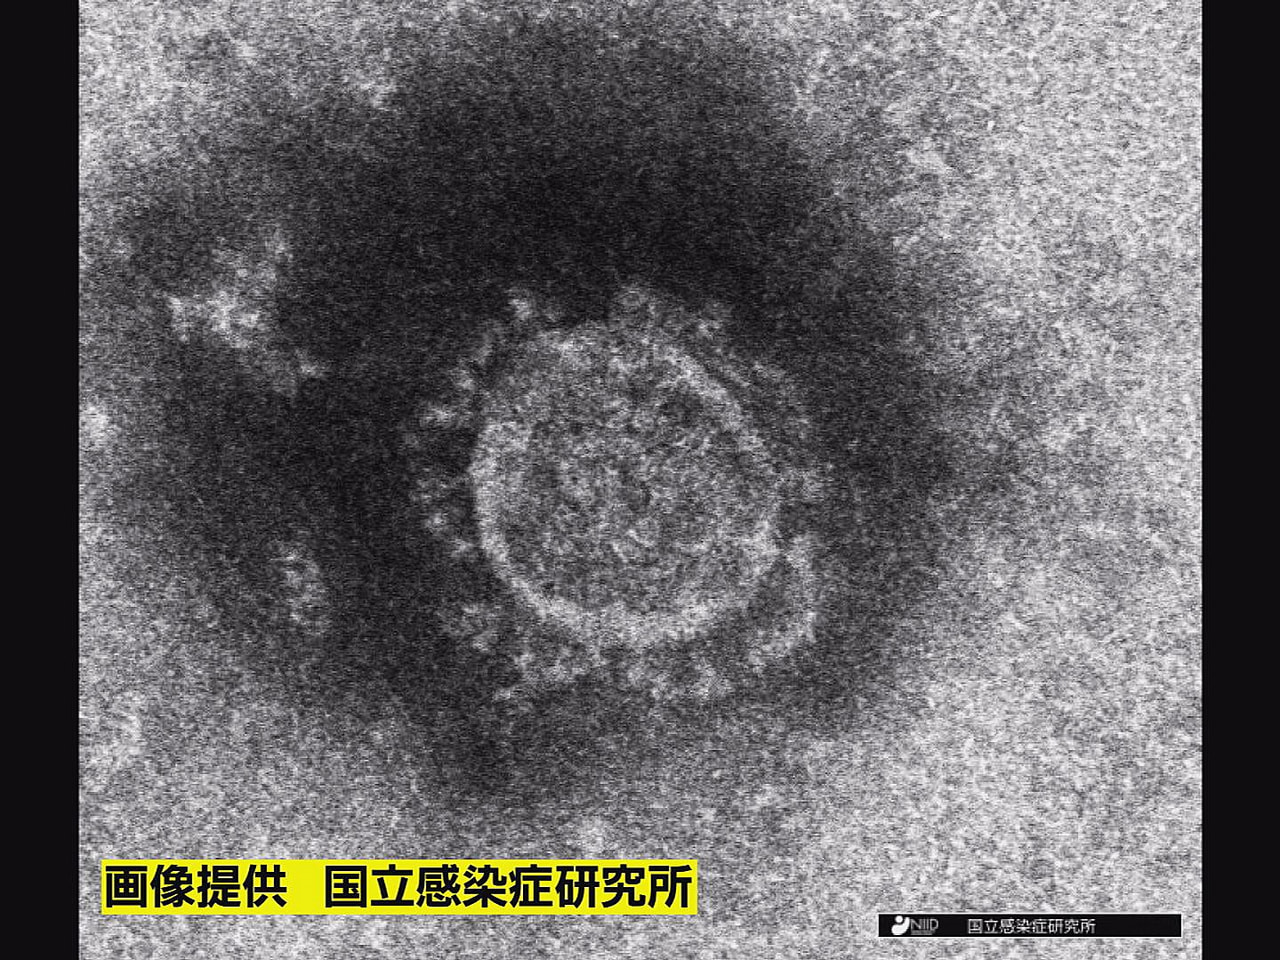 岐阜県と岐阜市は１日、新型コロナウイルスの感染が新たに２人確認されたと発表しまし...